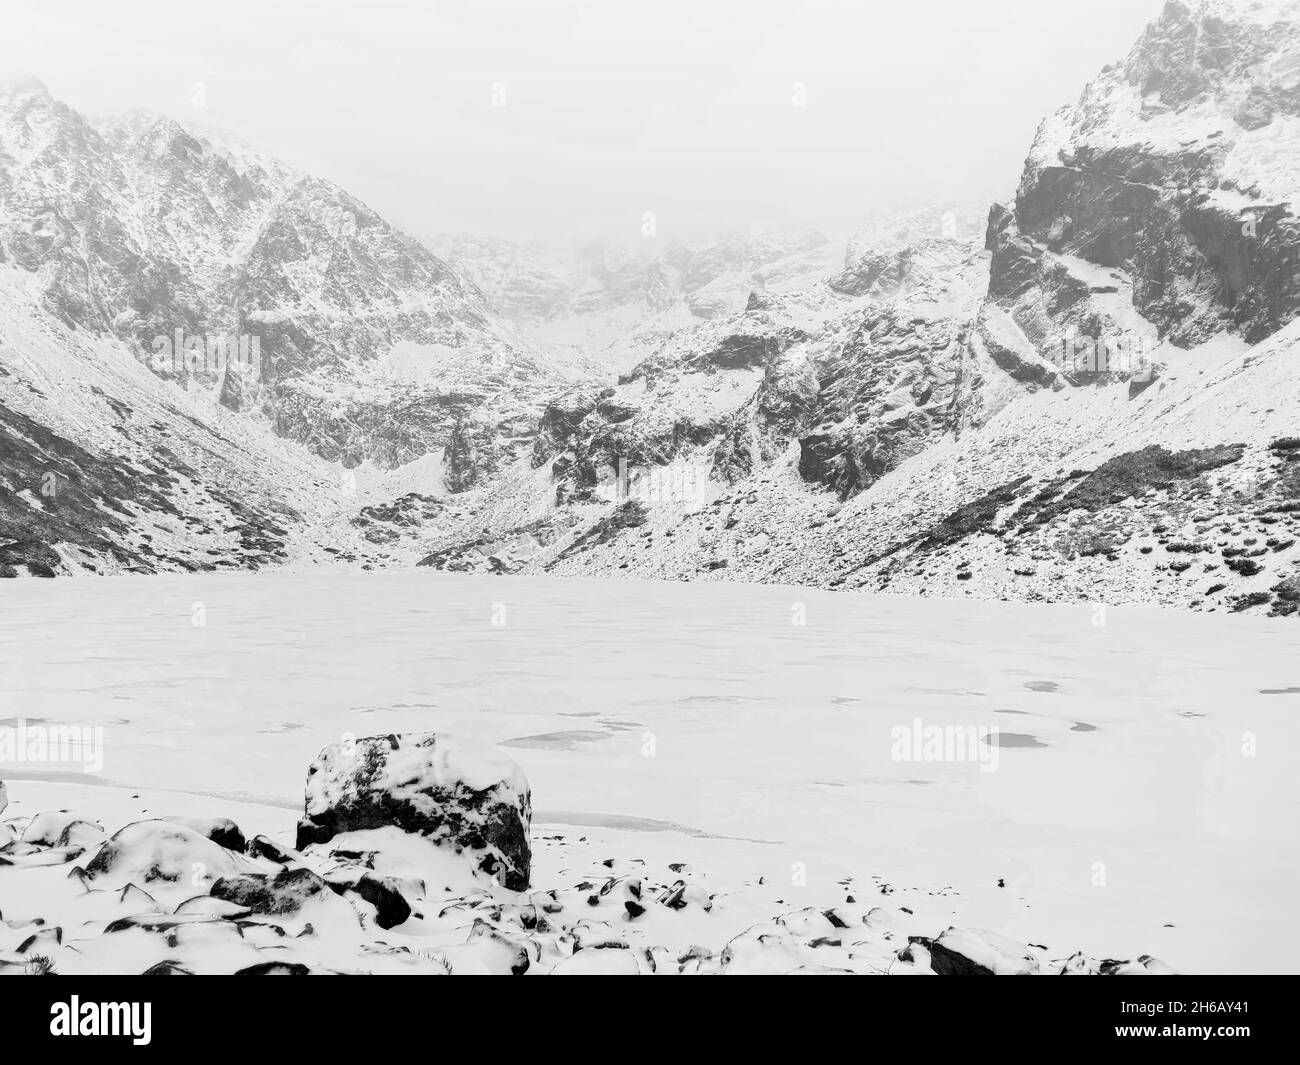 Una vista panorámica en escala de grises de terreno abierto con rocas cubiertas de nieve y montañas en el fondo Foto de stock